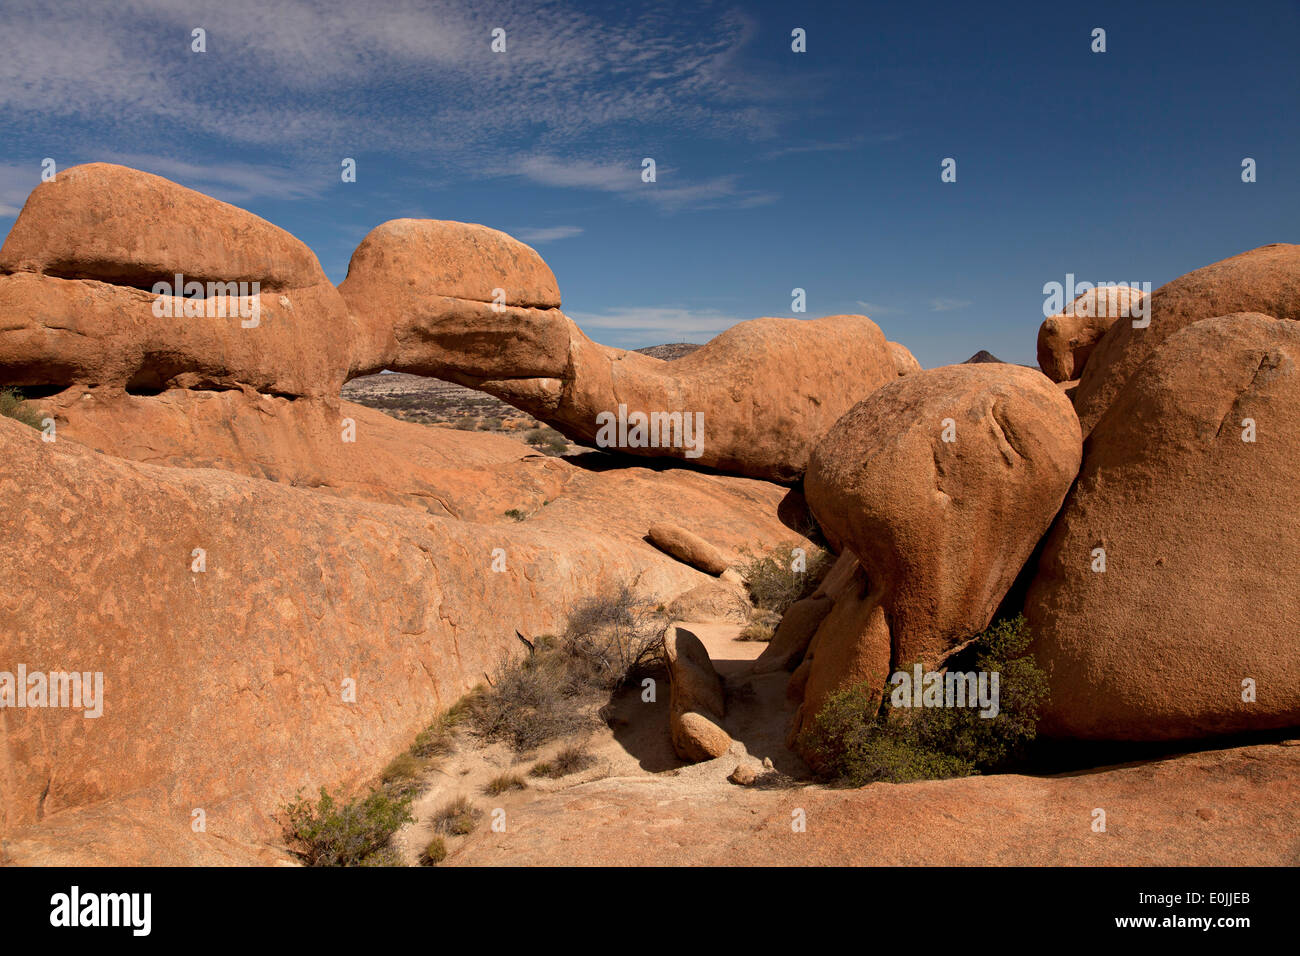 rock arch near the granite mountain Spitzkoppe, Namibia, Africa Stock Photo